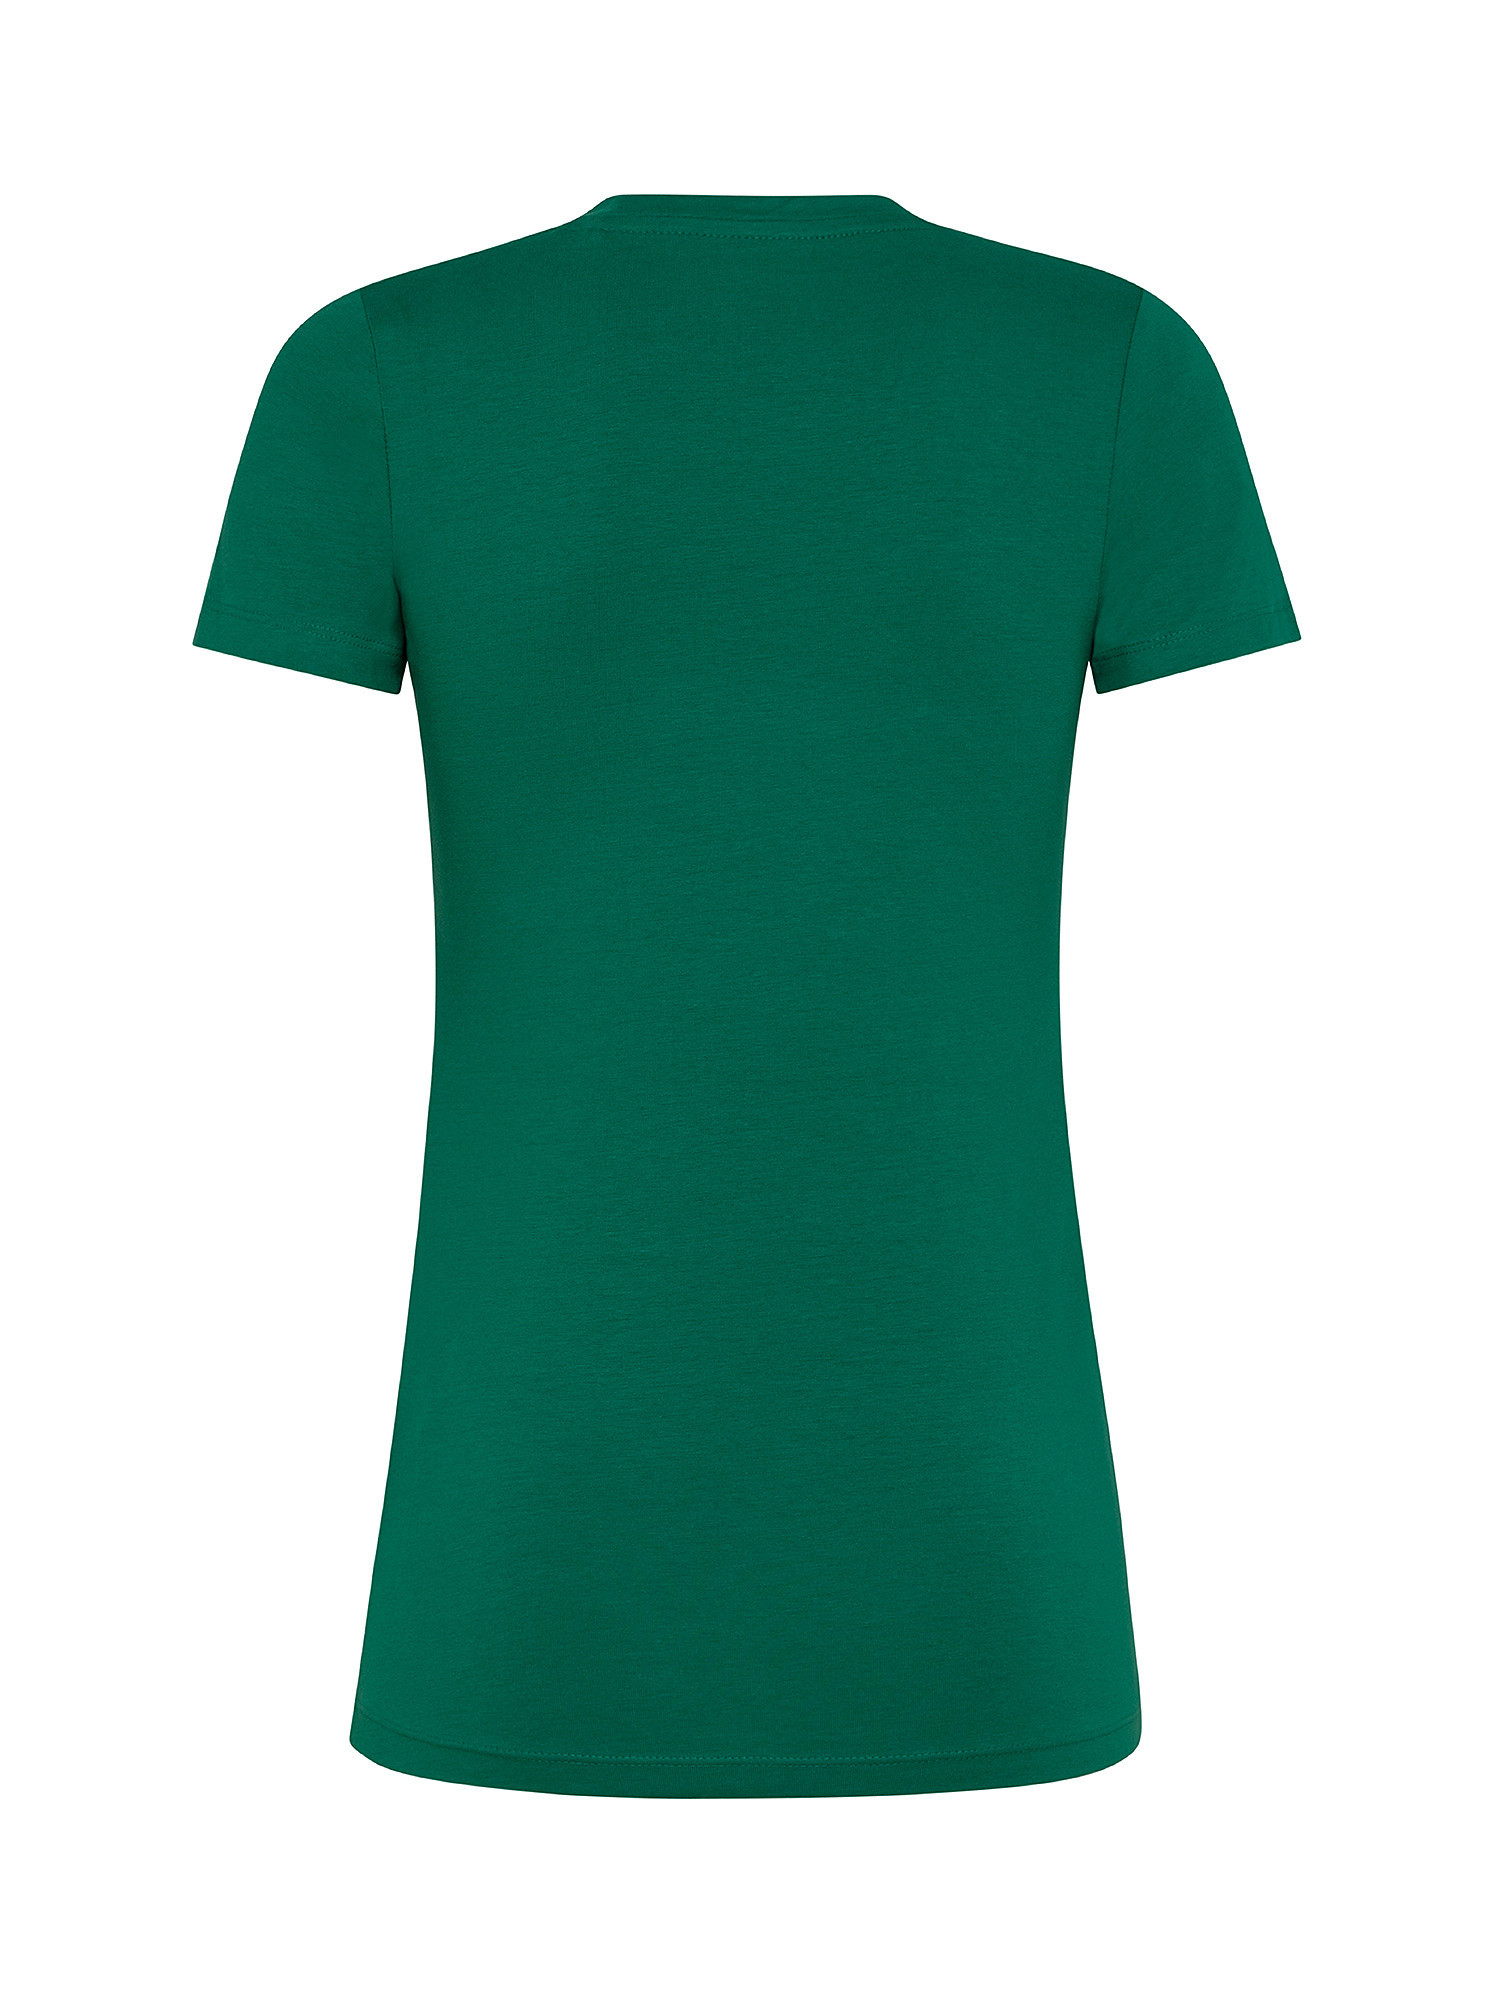 Violette cotton T-shirt, Green, large image number 1